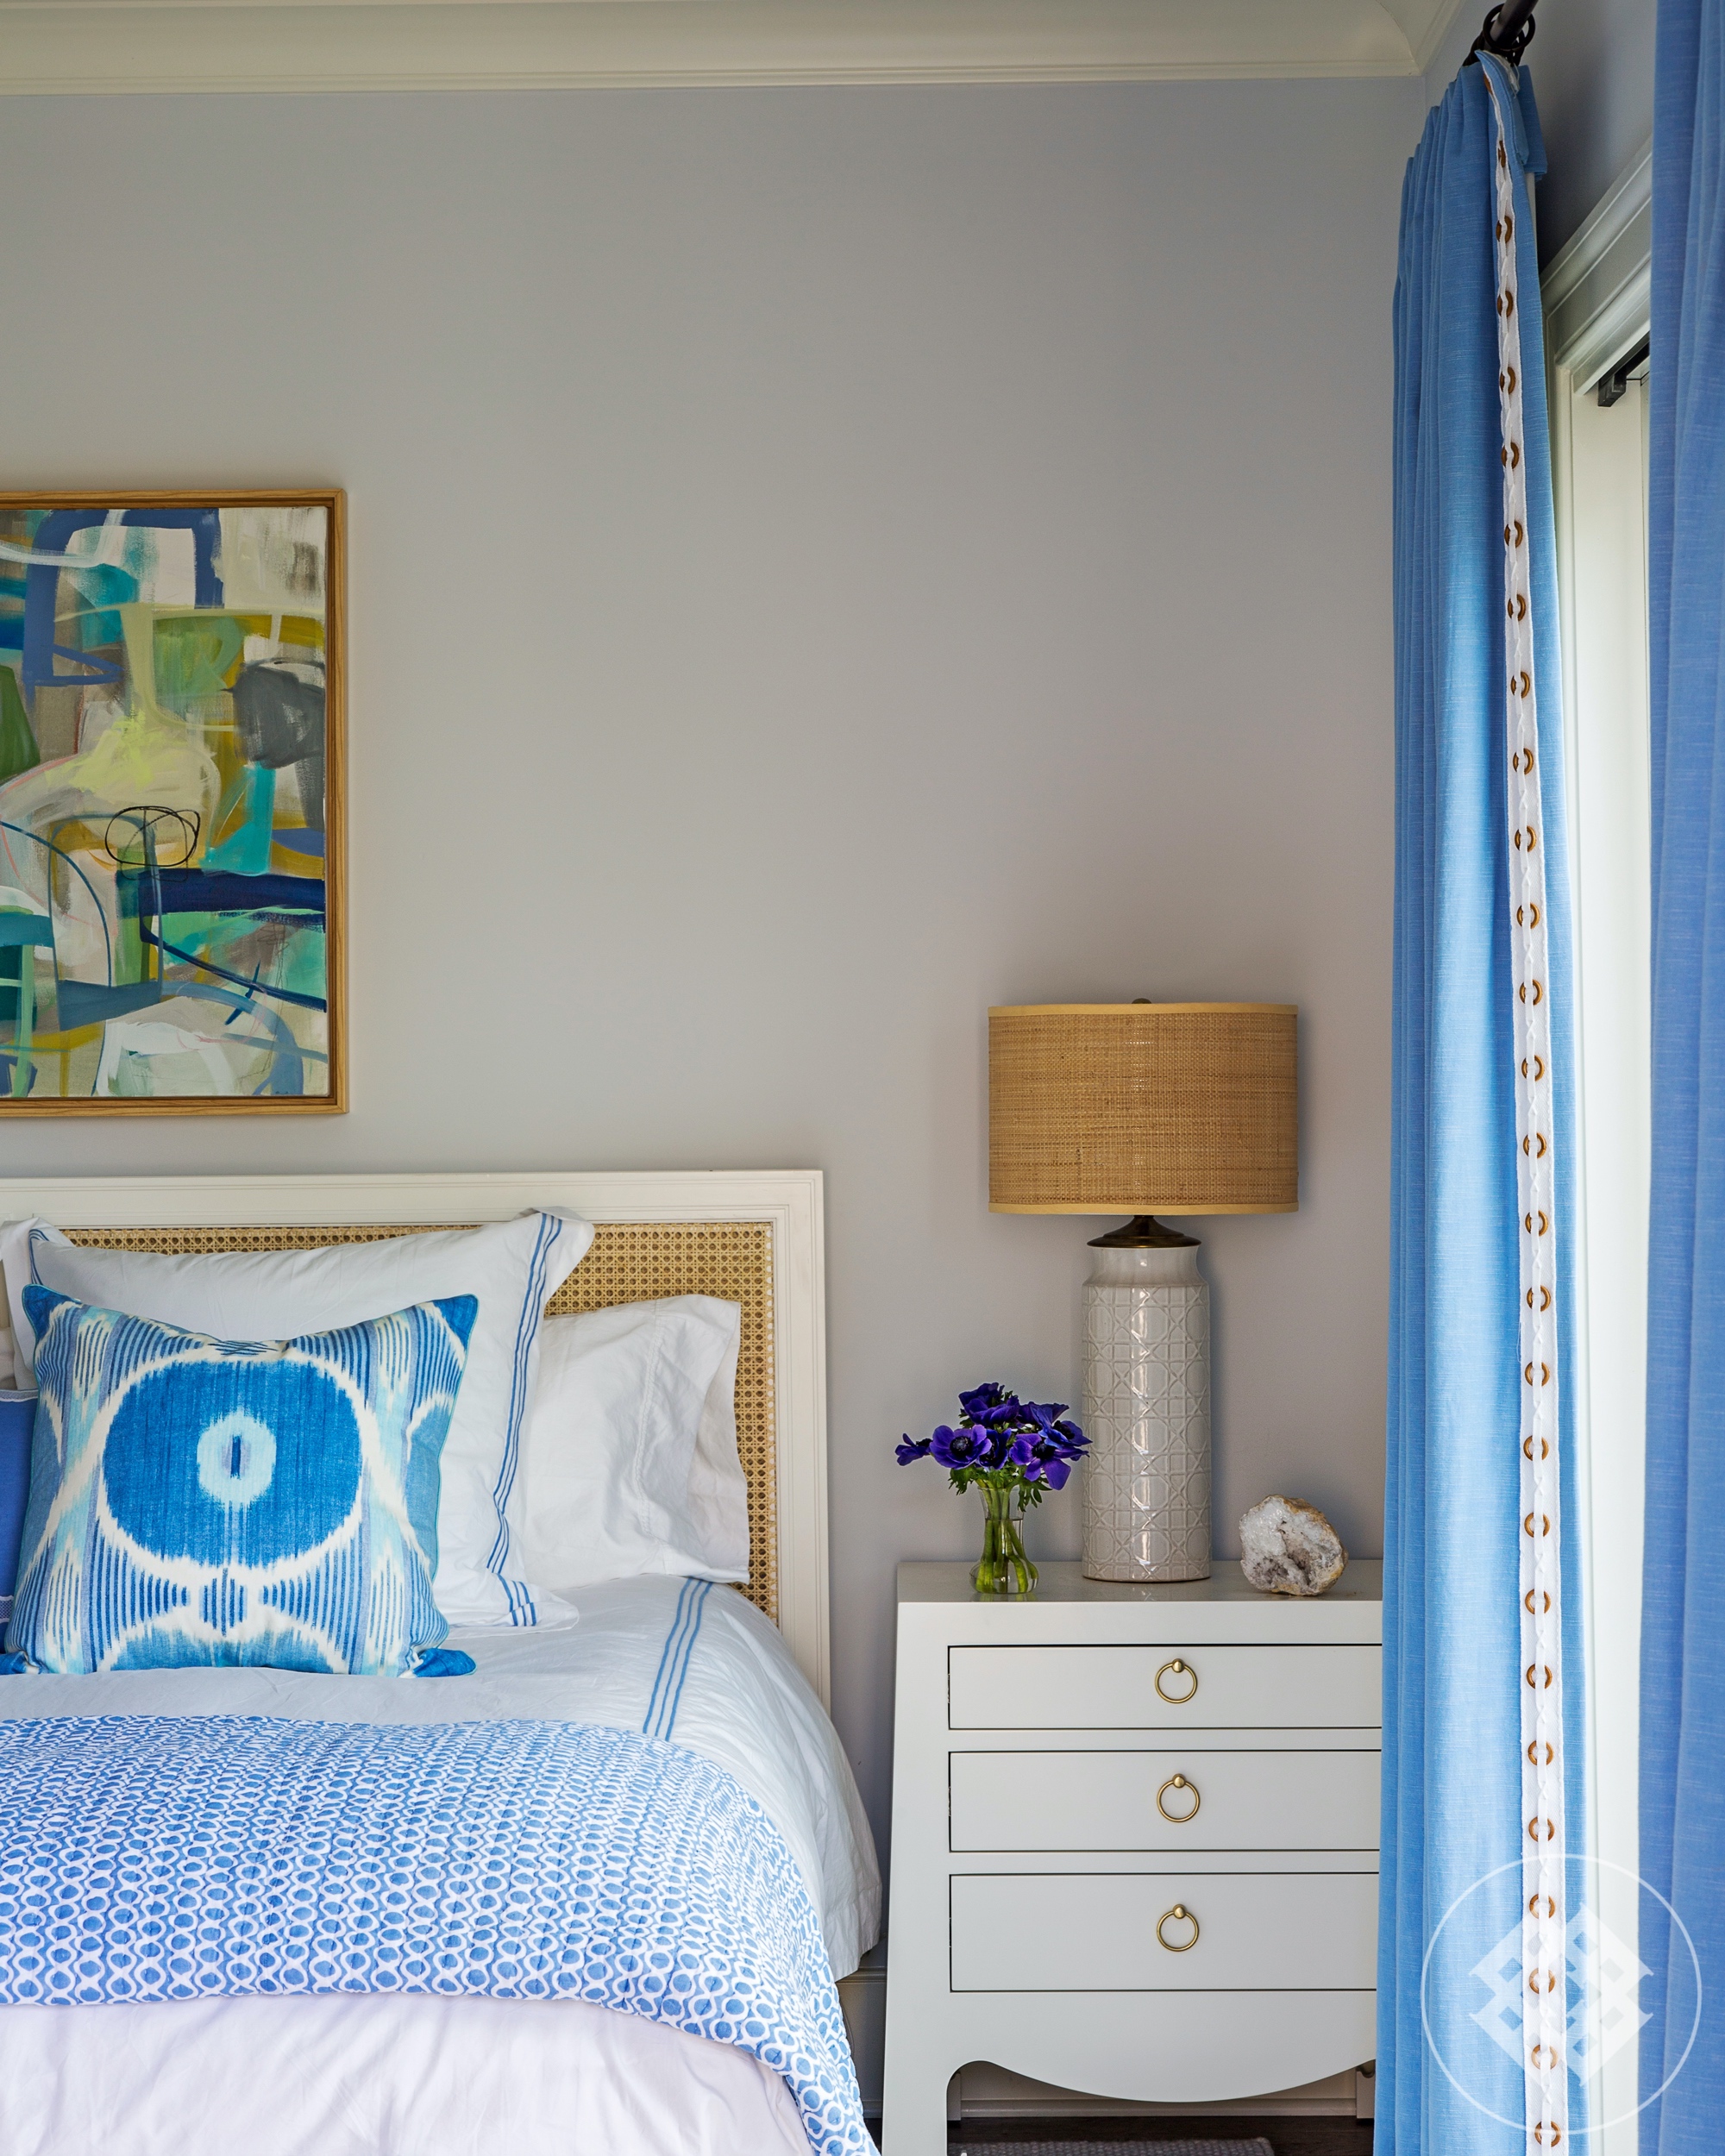 hss-bedroom-sidetable-vintage-lamp-burlap-shade.jpg